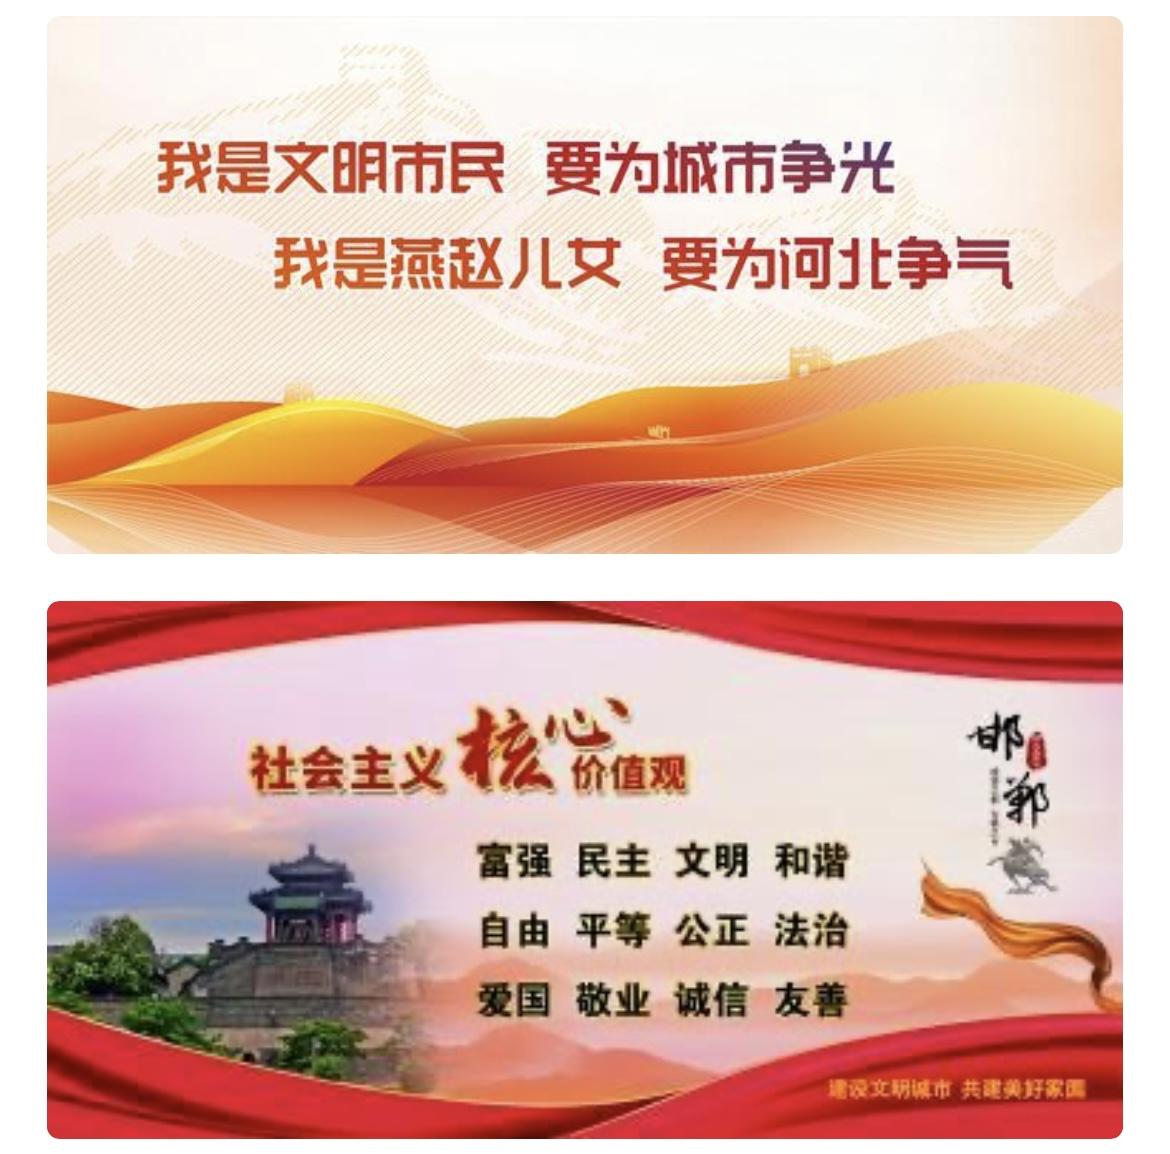 大名小磨香油推介会在北京举办：hq体育官方网站